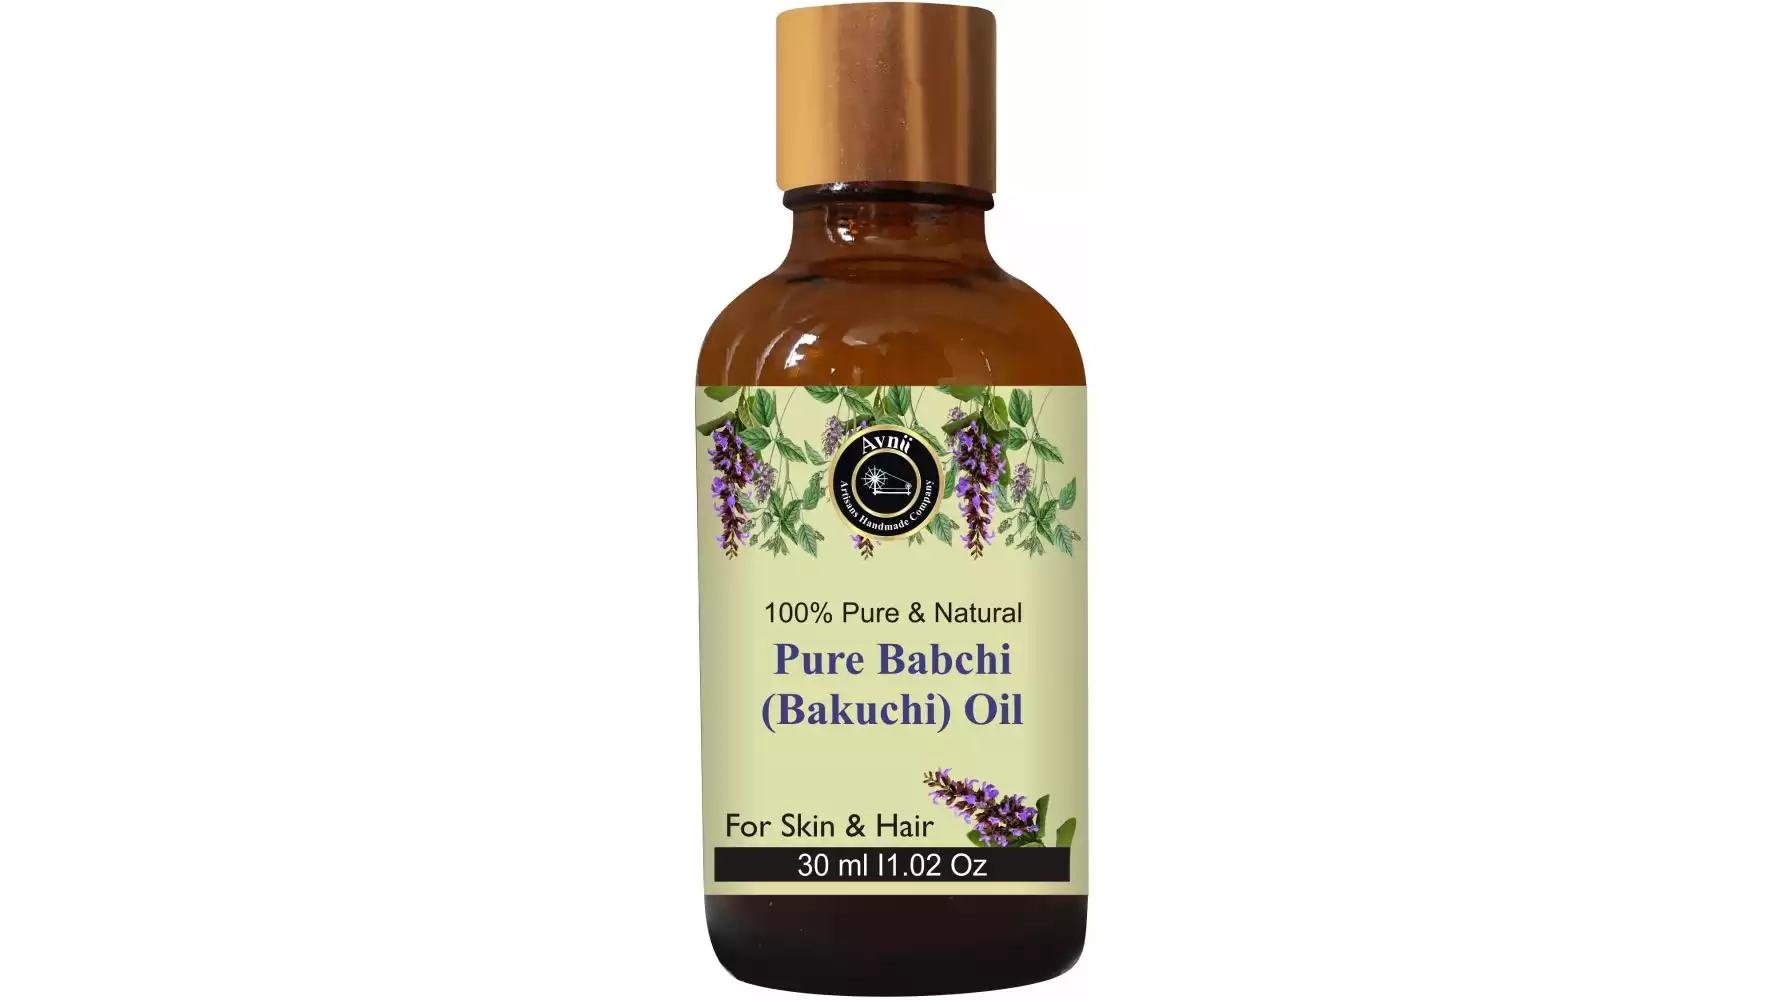 Avnii Organics Babchi Oil (Bakuchi Oil) For Hair & Skin Care (30ml)